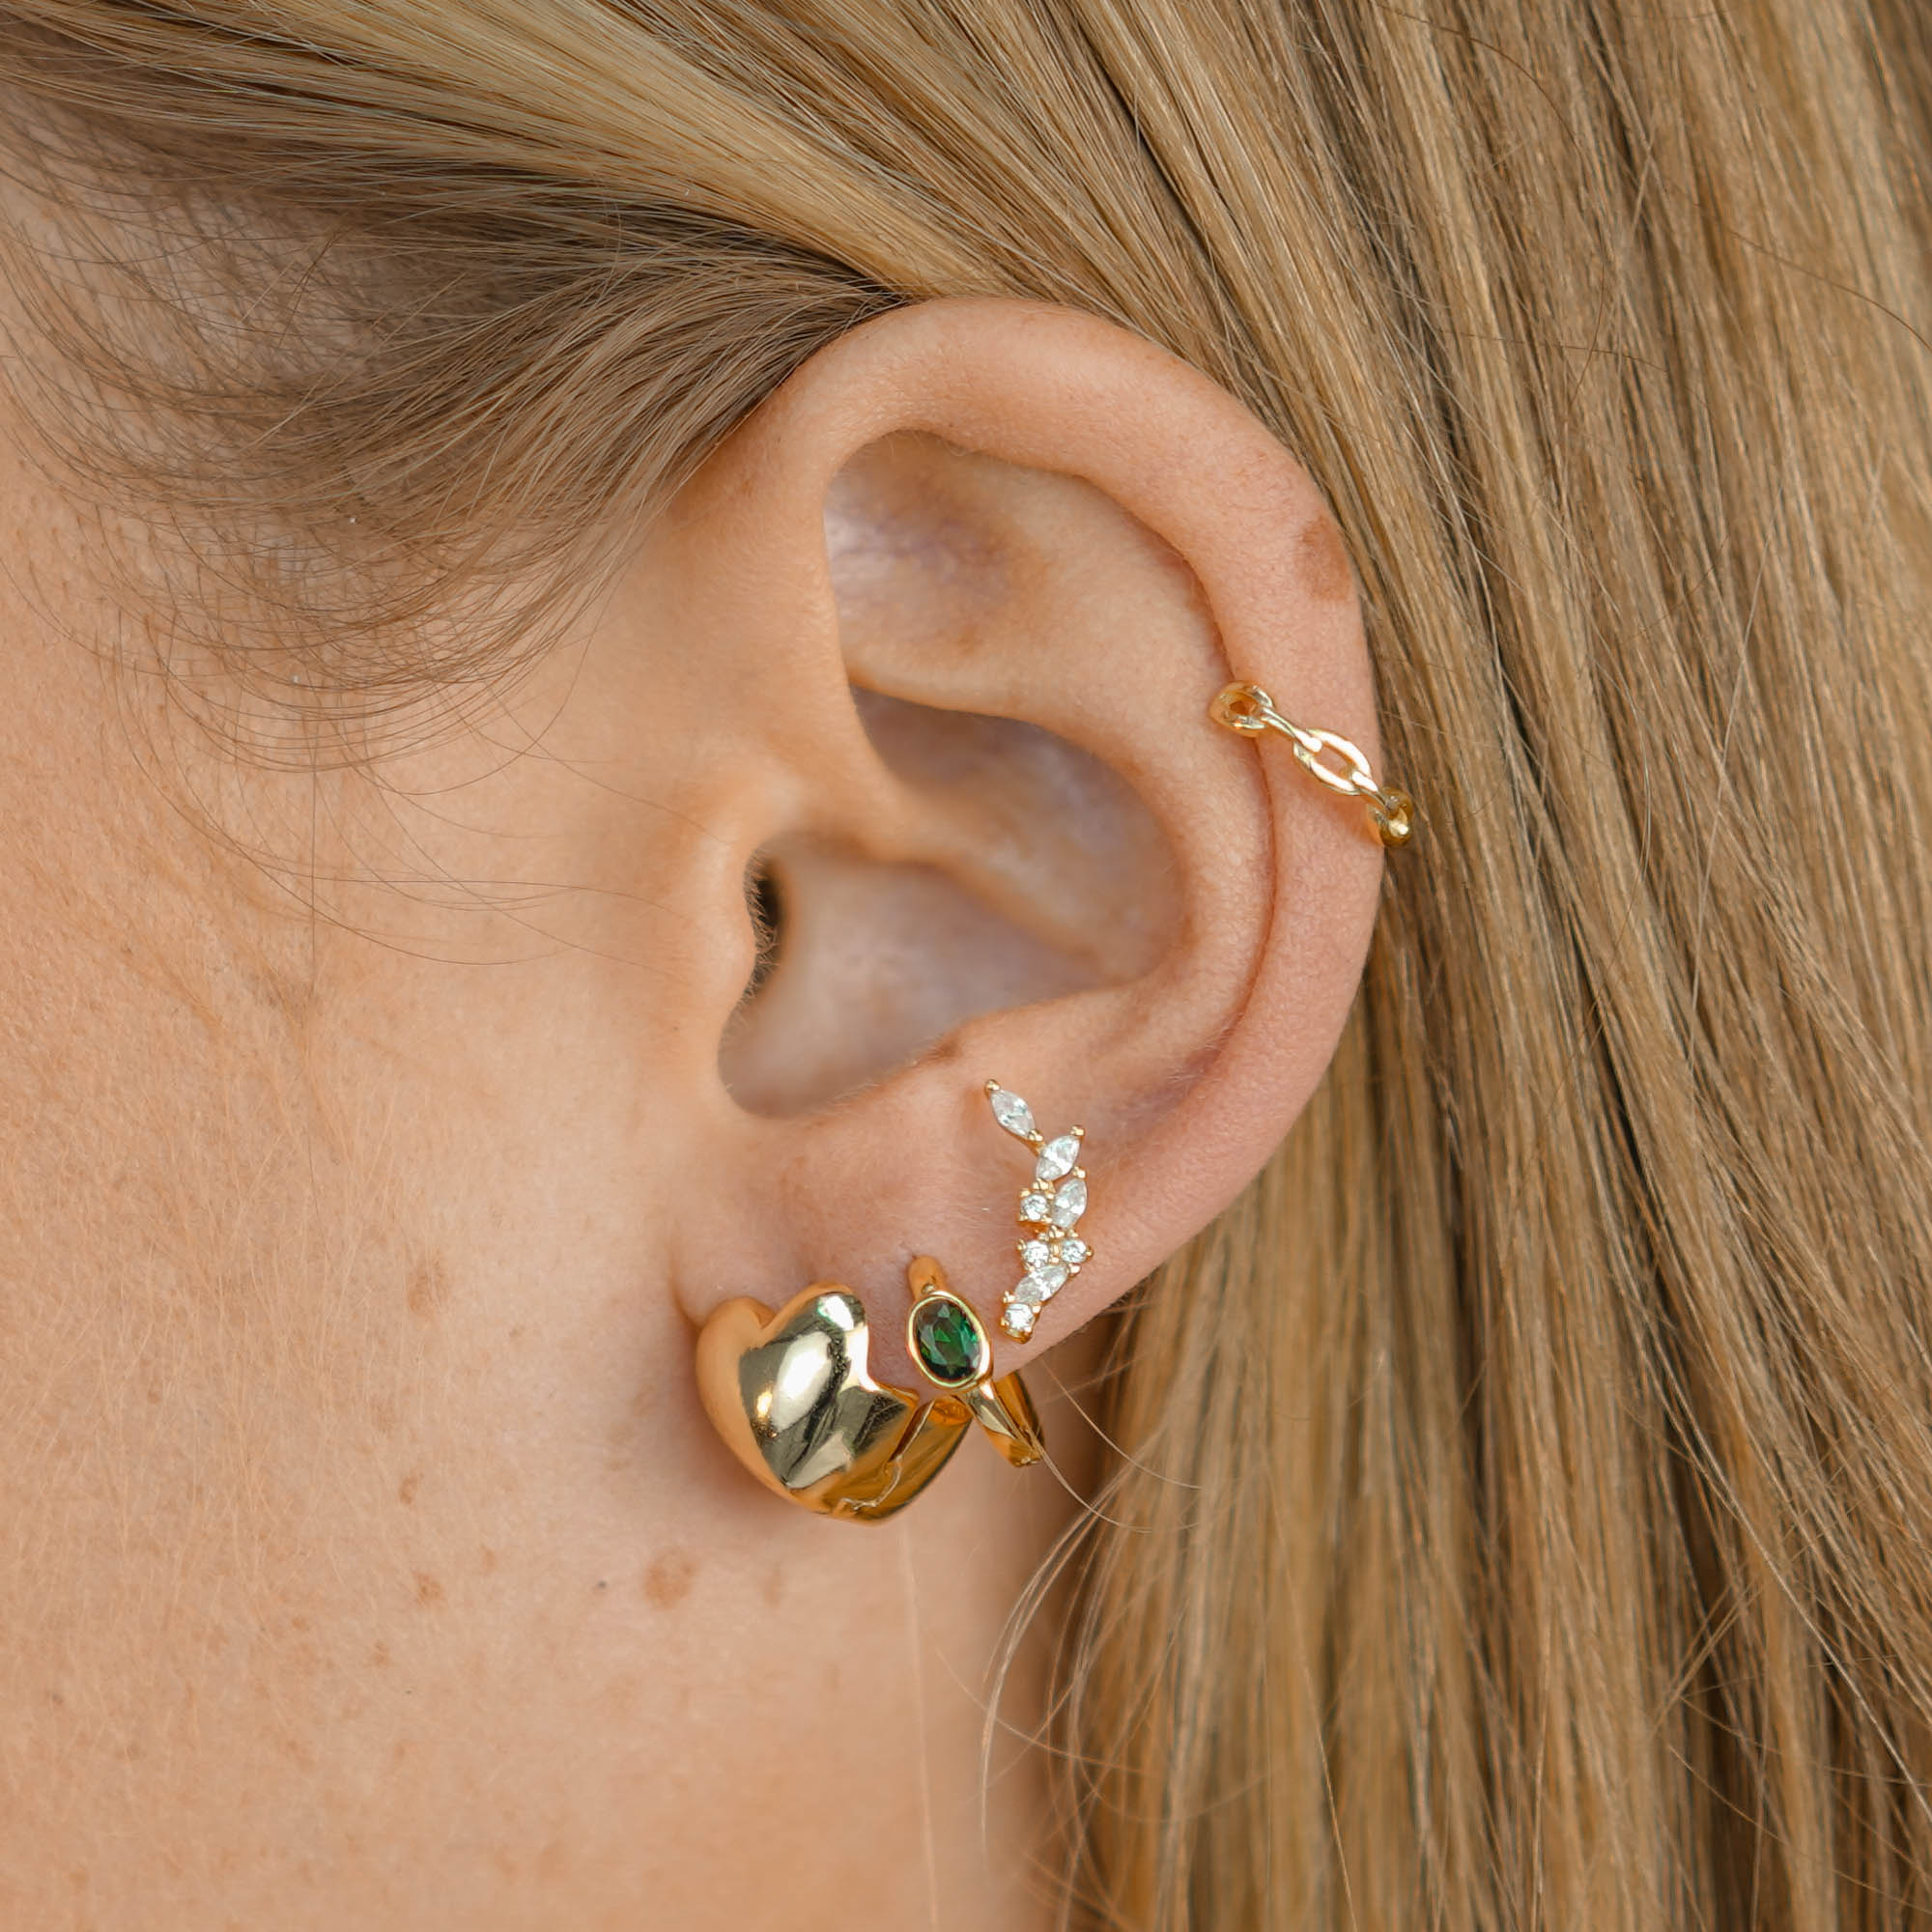 Heart Dome Huggie Earrings